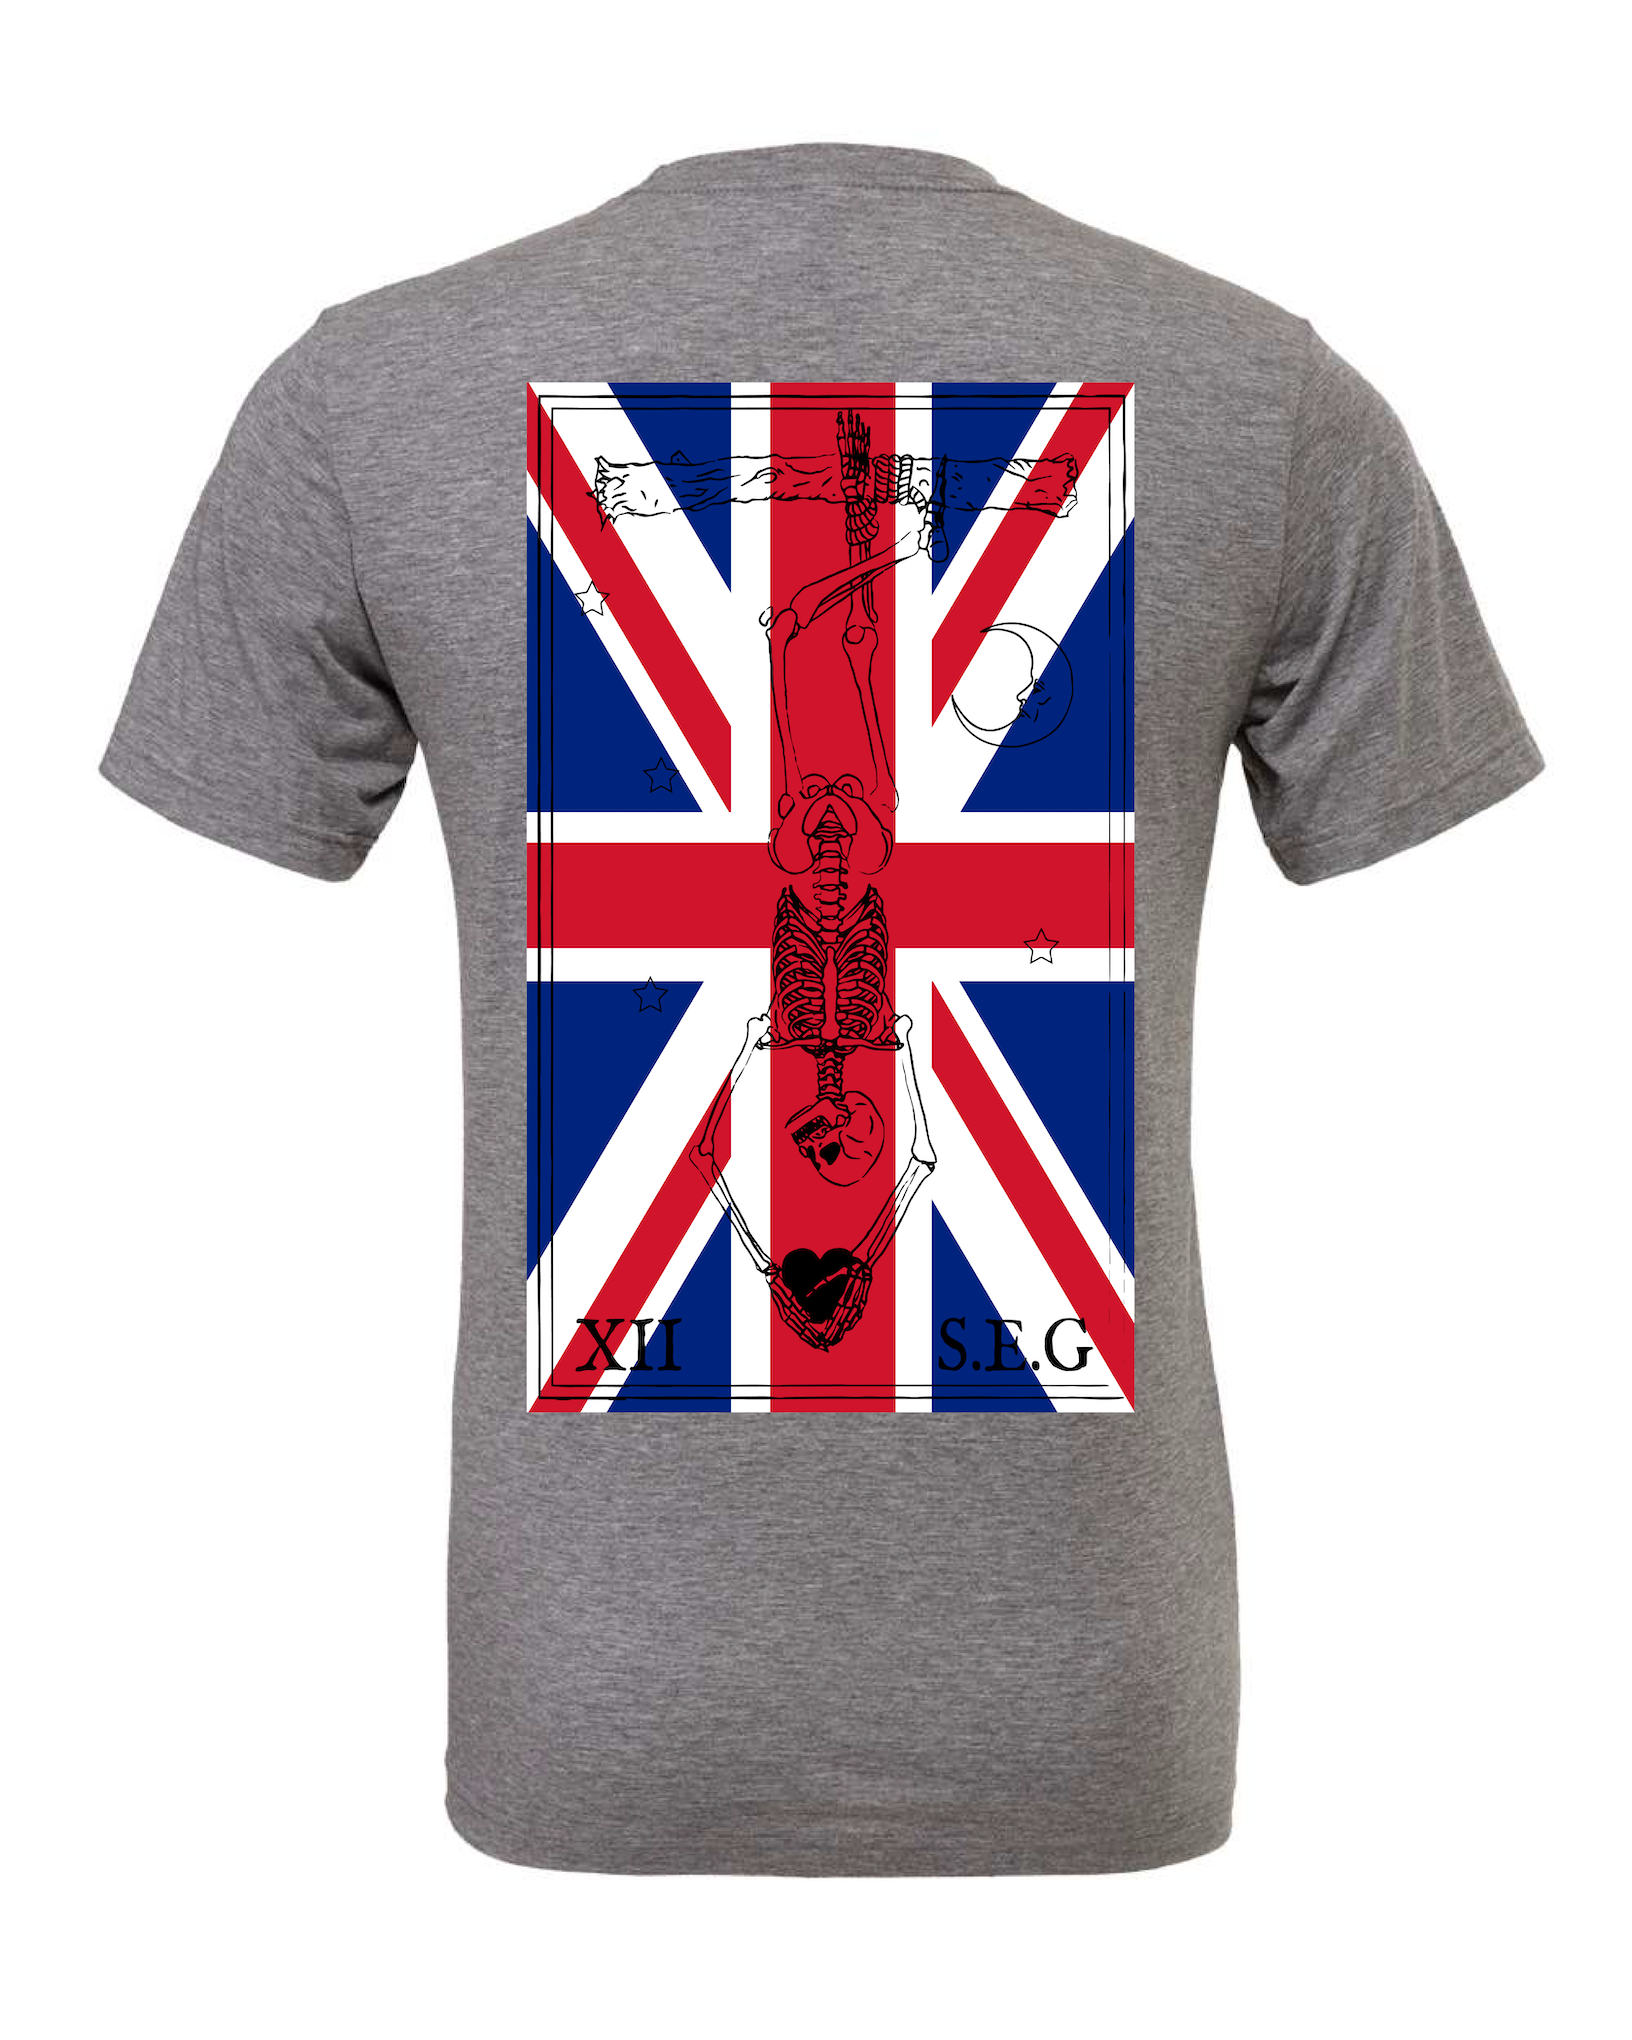 UK Patriot Hanged Man T-Shirt